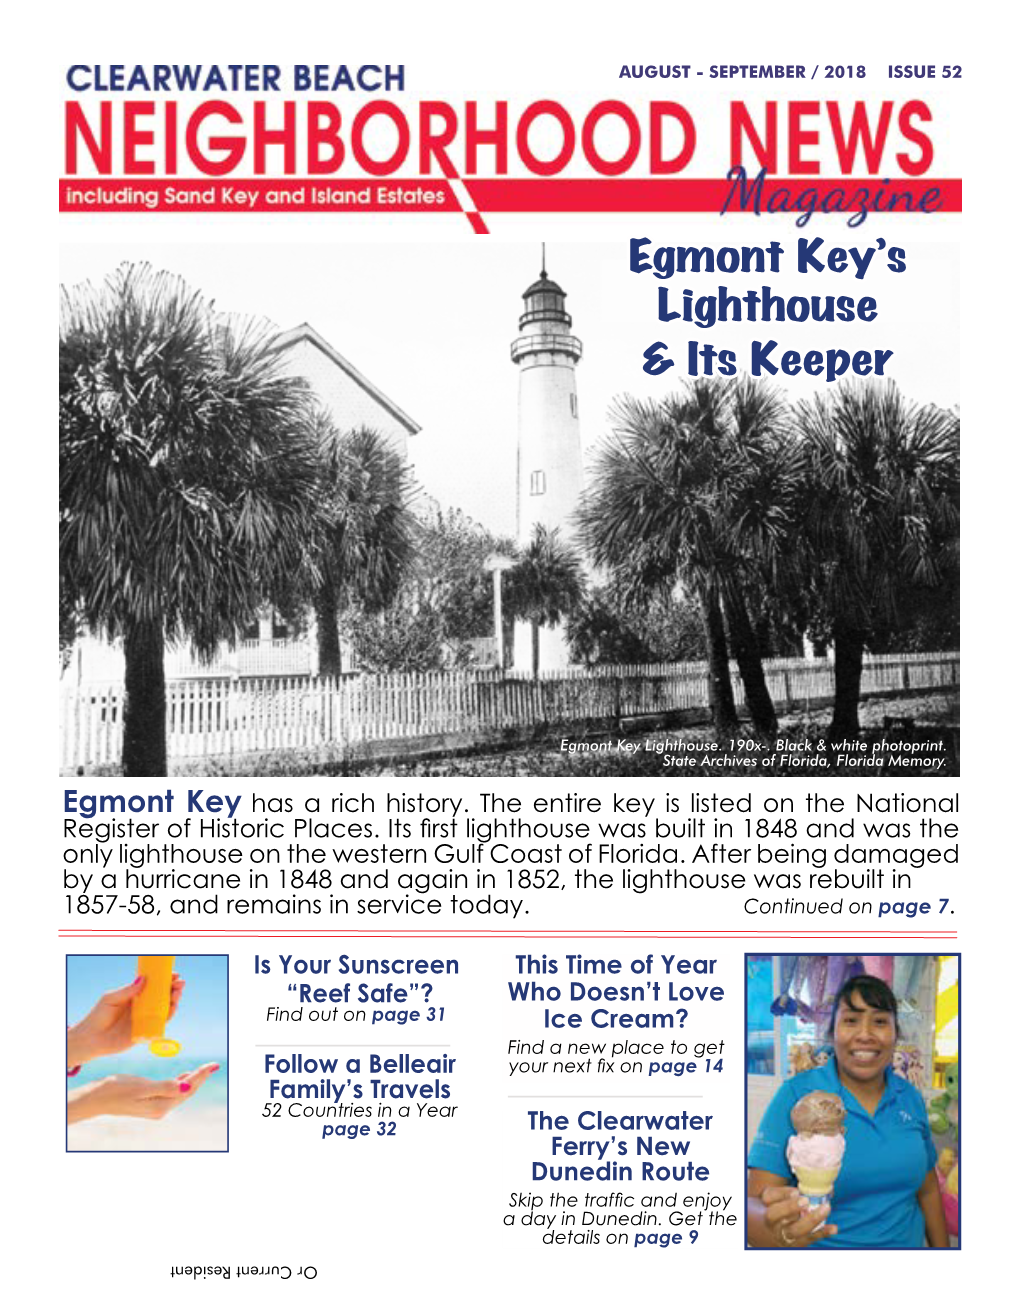 Egmont Key's Lighthouse & Its Keeper